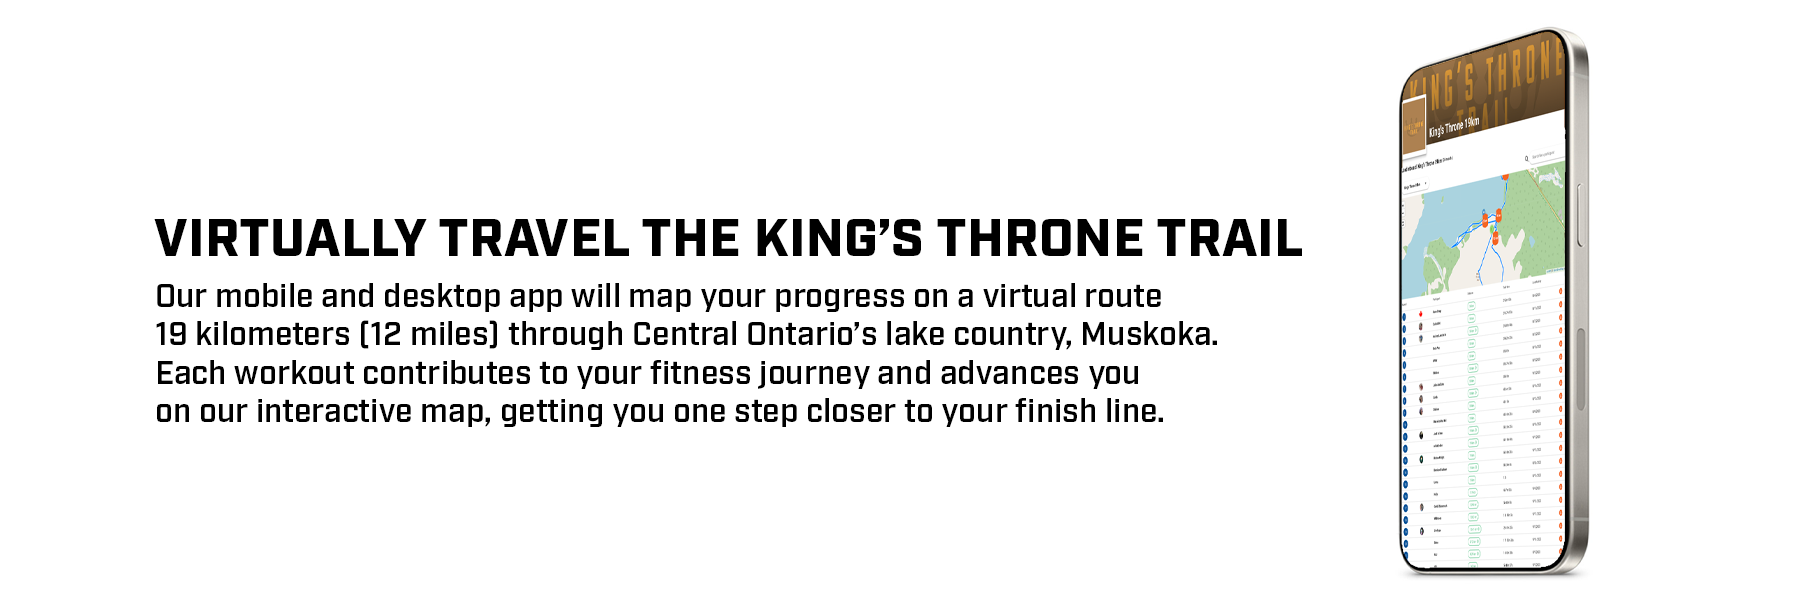 True_North_App_Screenshot_Kings_Throne.png